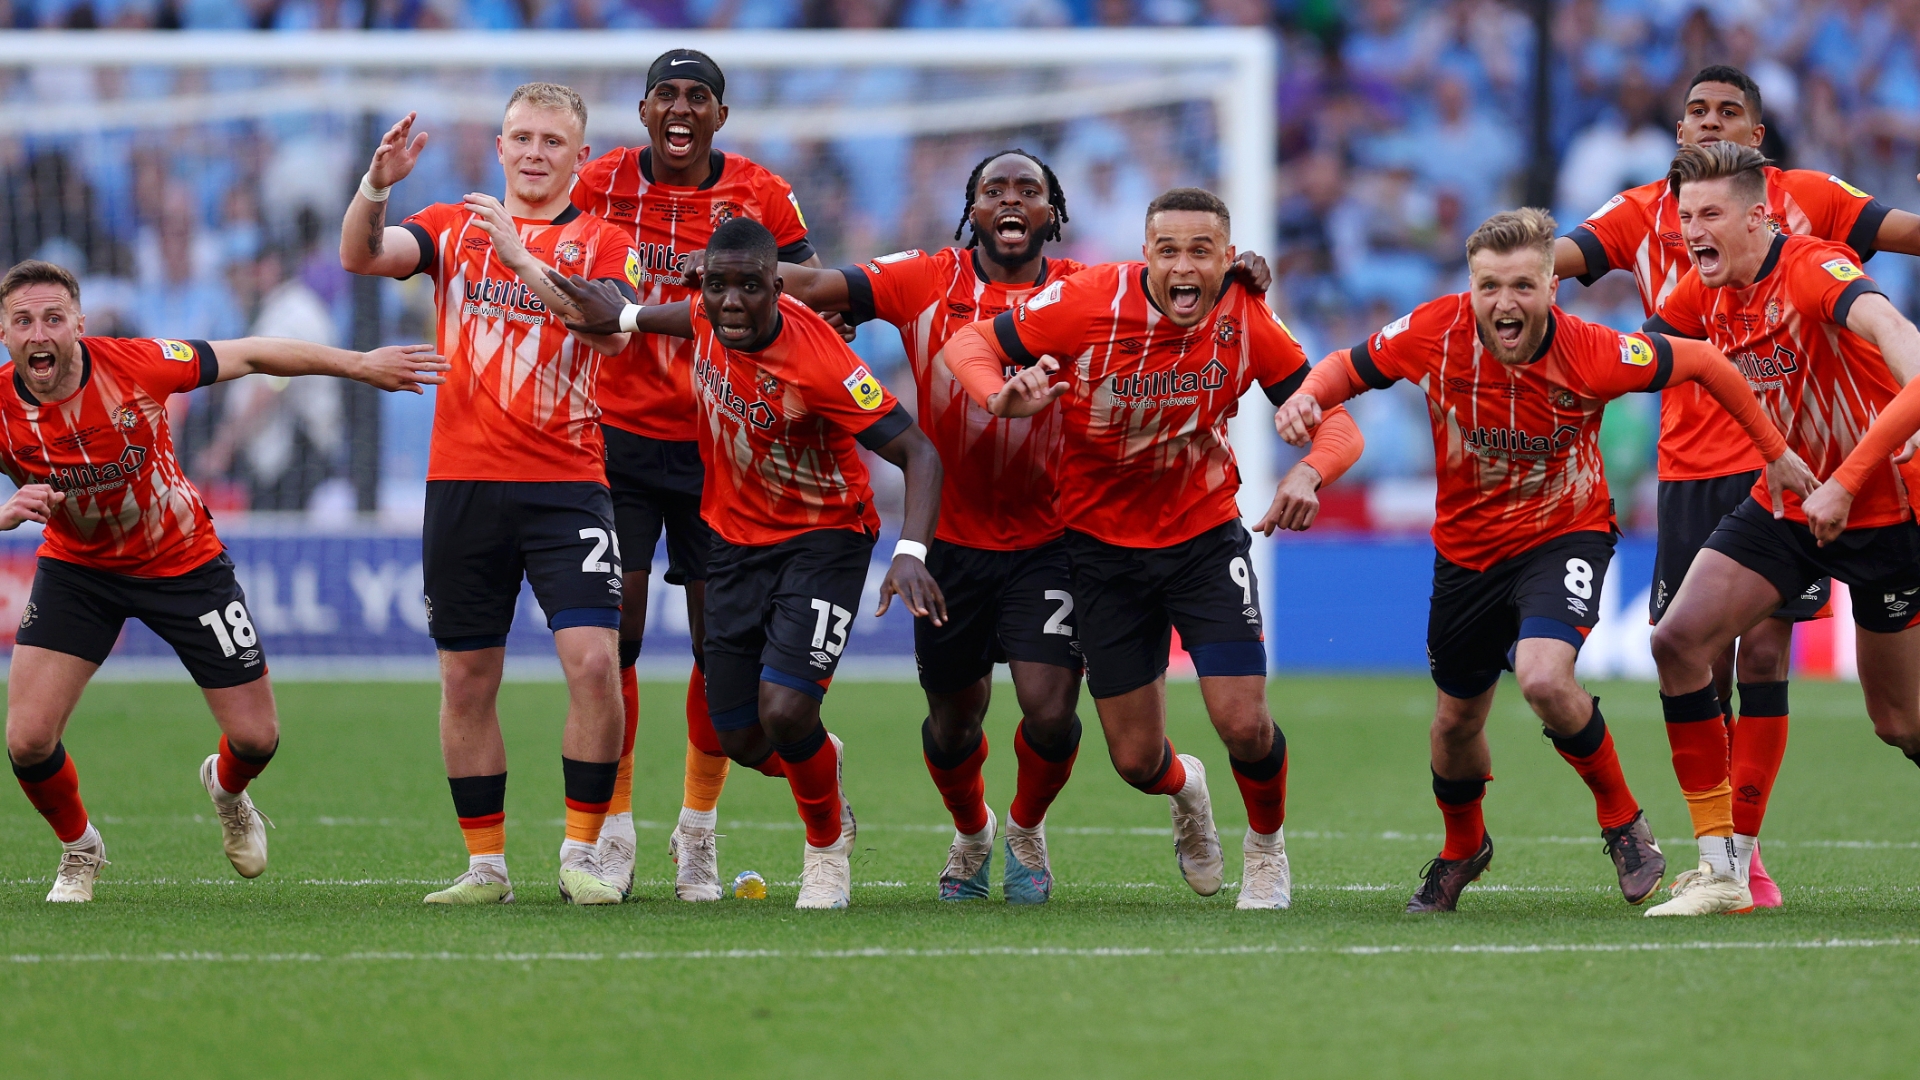 Luton celebrates Premier League promotion as Coventry misses penalty